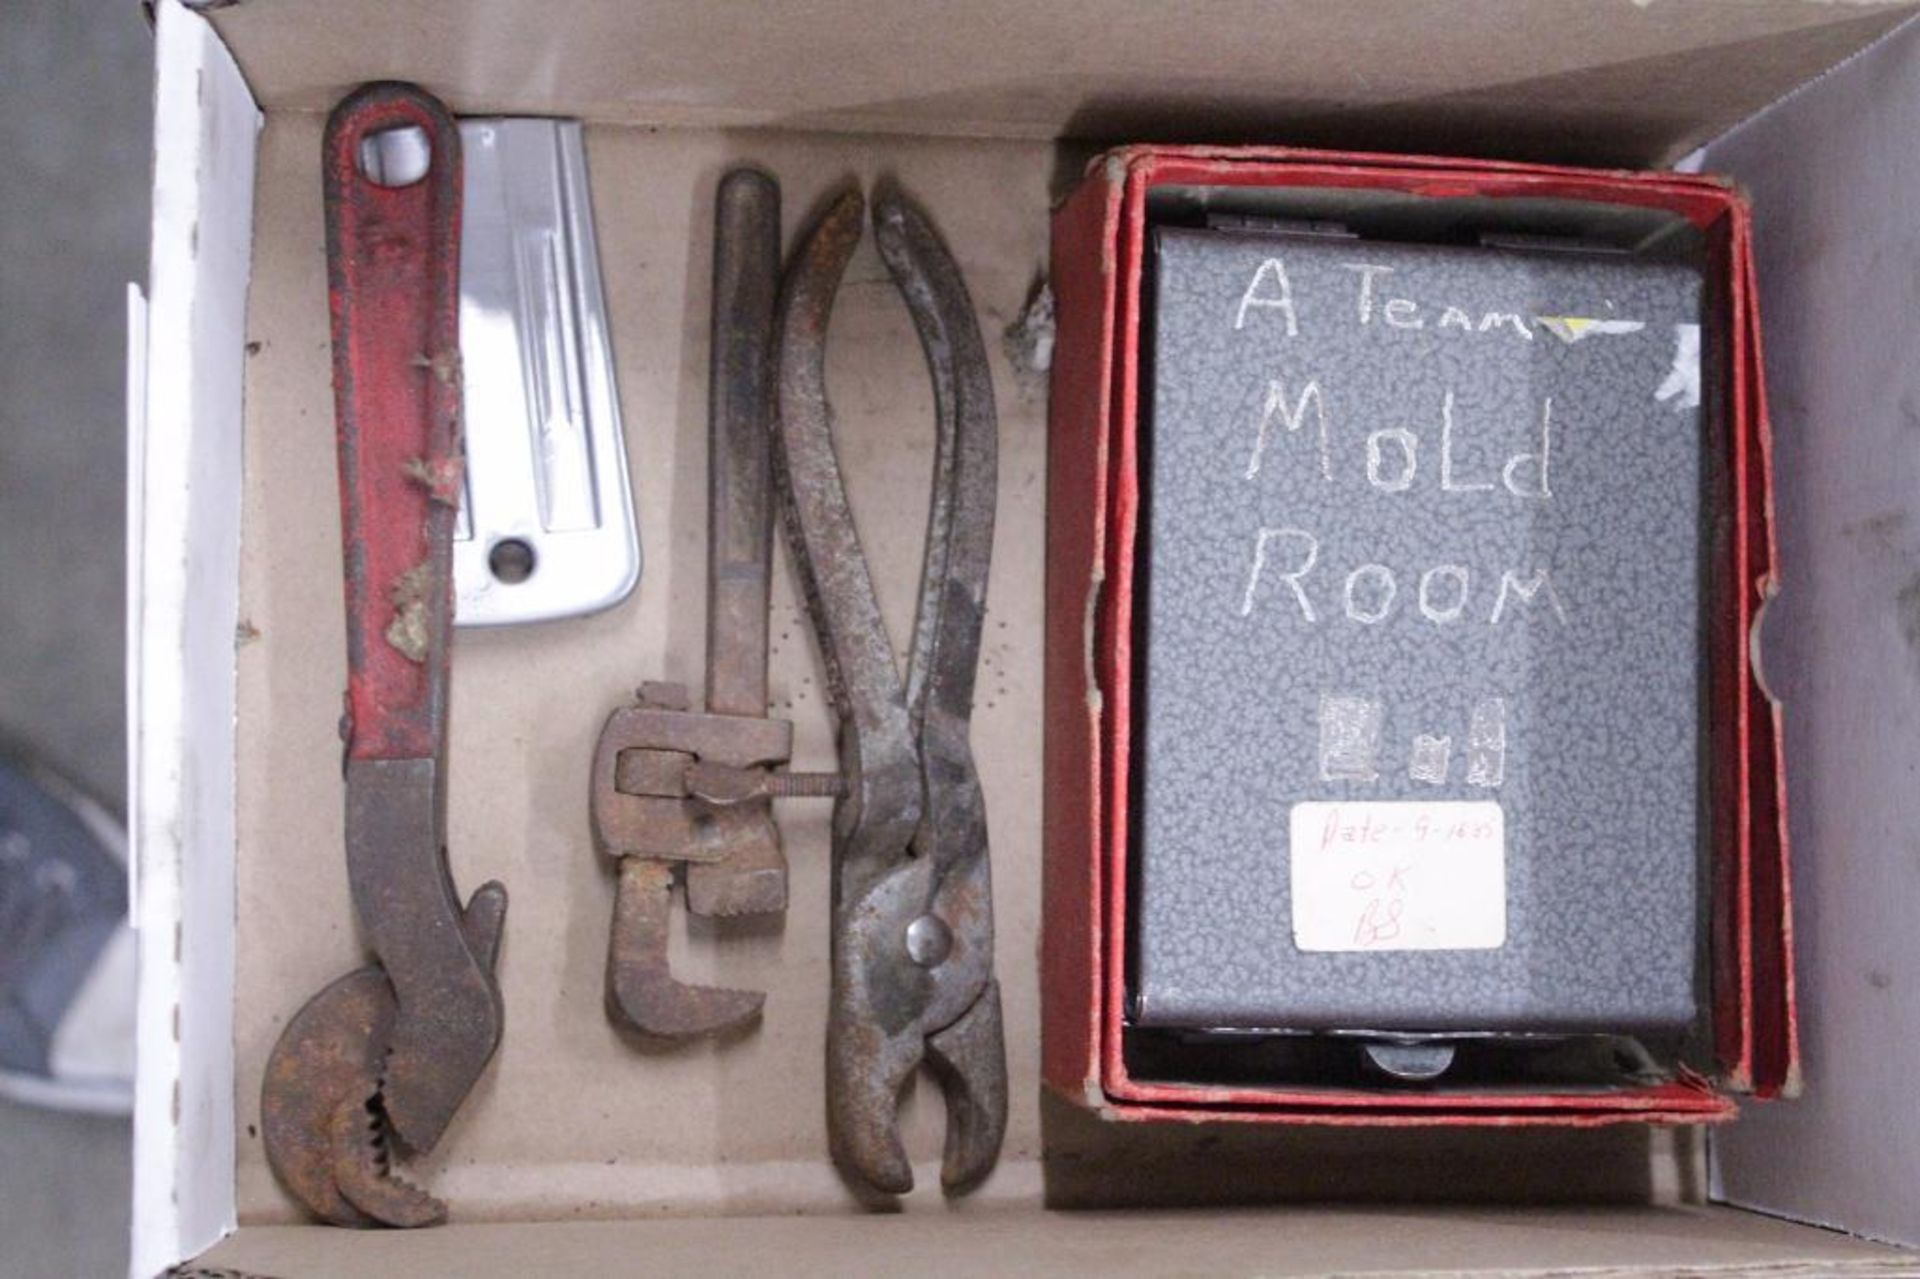 Vintage tools & pocket probe - Image 2 of 3